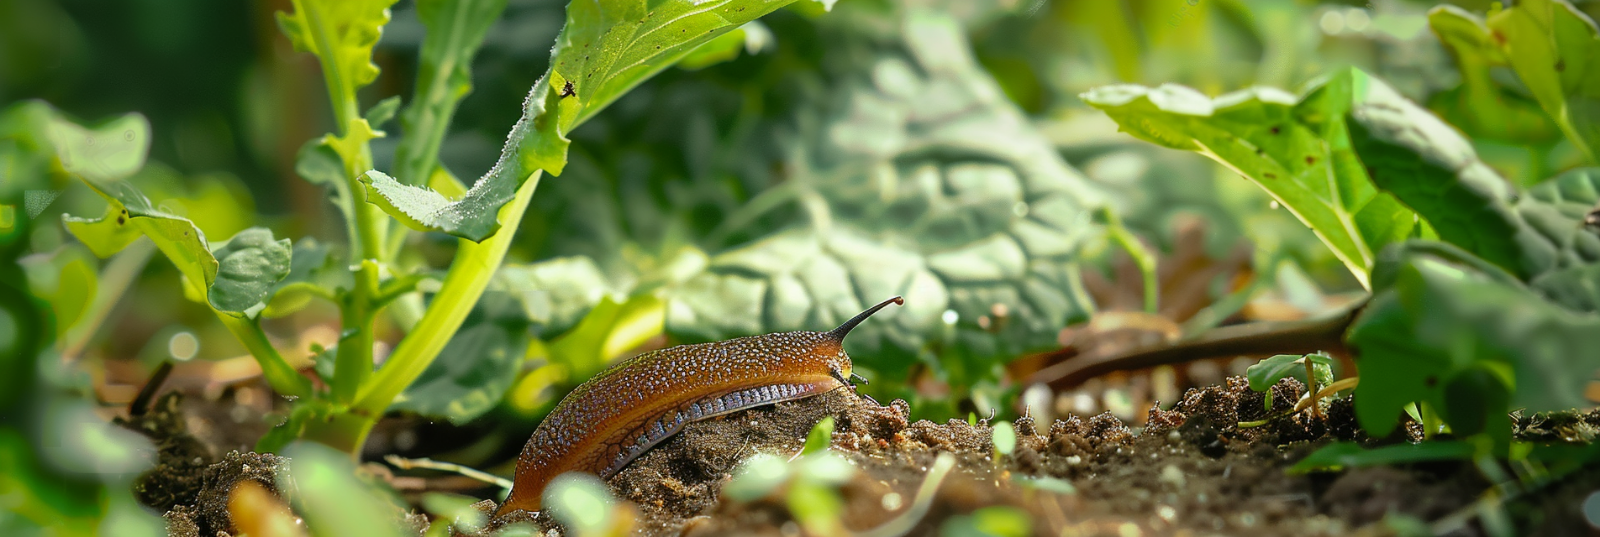 Protégez votre jardin : comment lutter contre les limaces ?